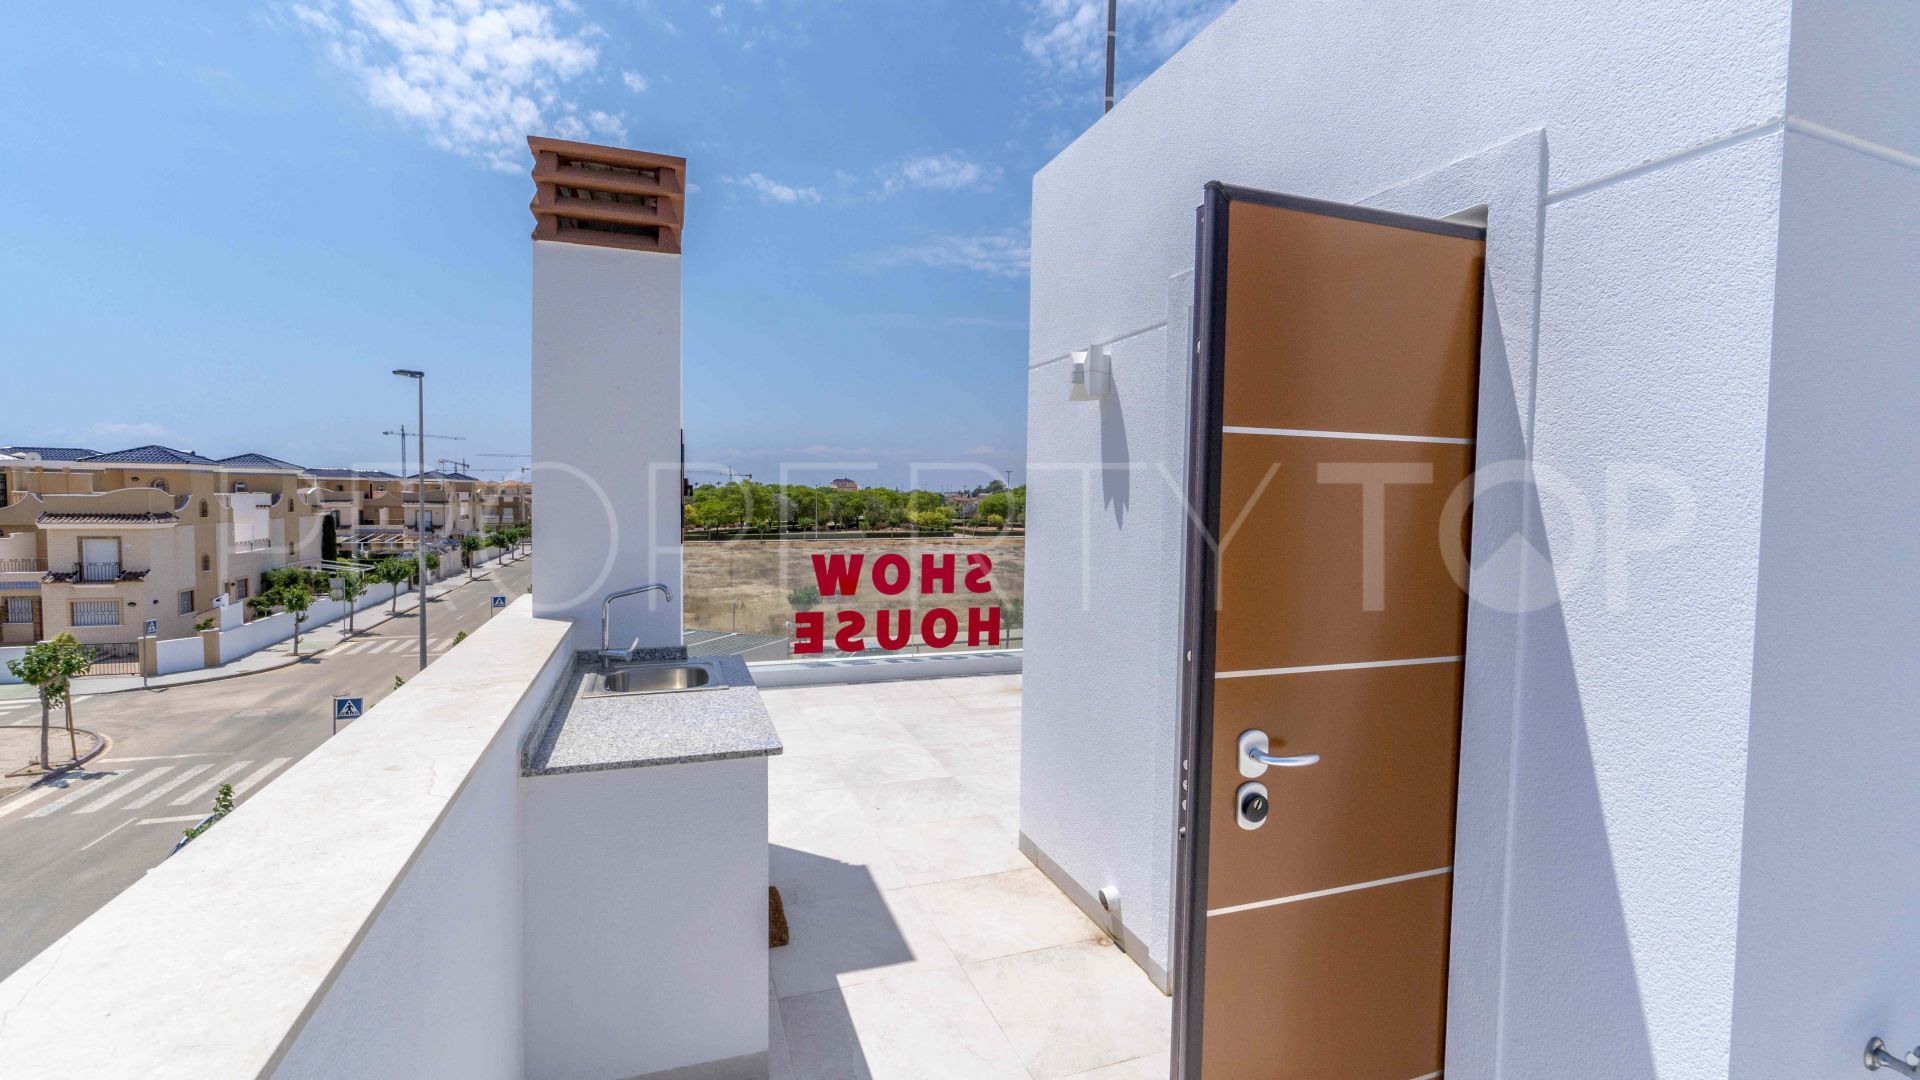 For sale villa in Torre de la Horadada with 3 bedrooms